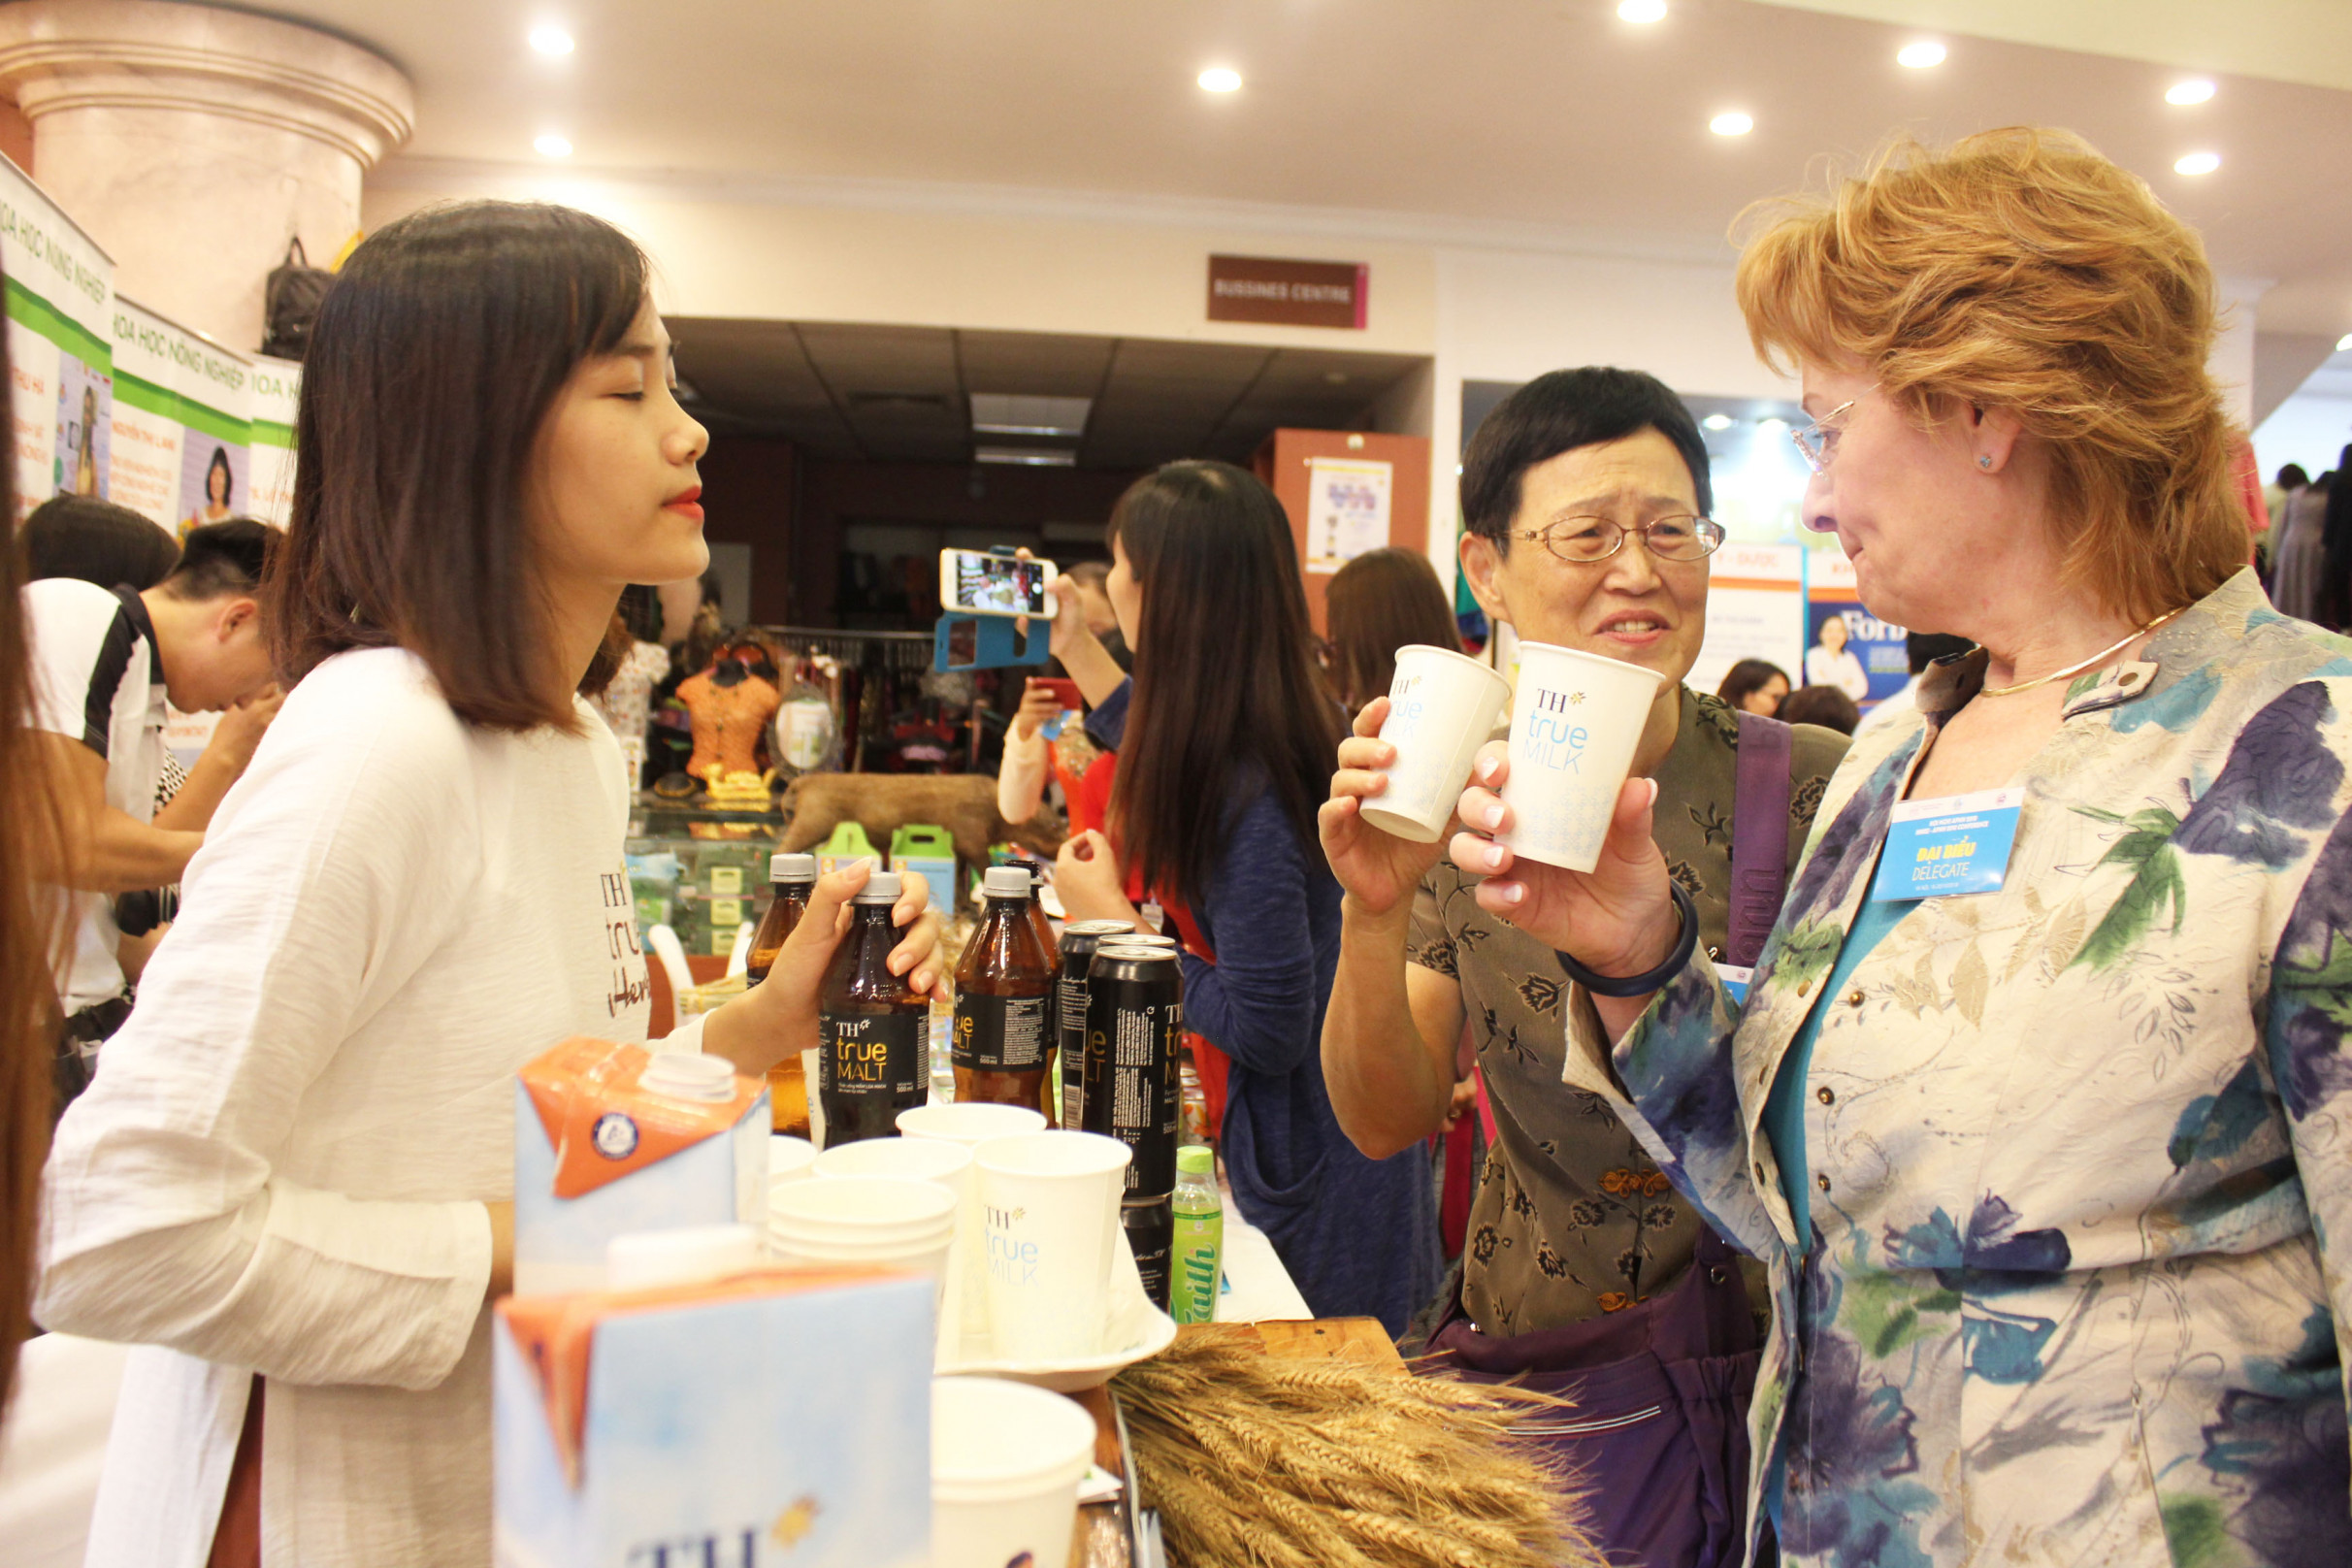 Chủ tịch Mạng lưới quốc tế các nhà khoa học và kỹ thuật nữ Gail G. Mattson và Chủ tịch Mạng lưới các nhà khoa học nữ Châu Á - Thái Bình dương Chia-Li Wu tấm tắc khen sữa Việt Nam.

